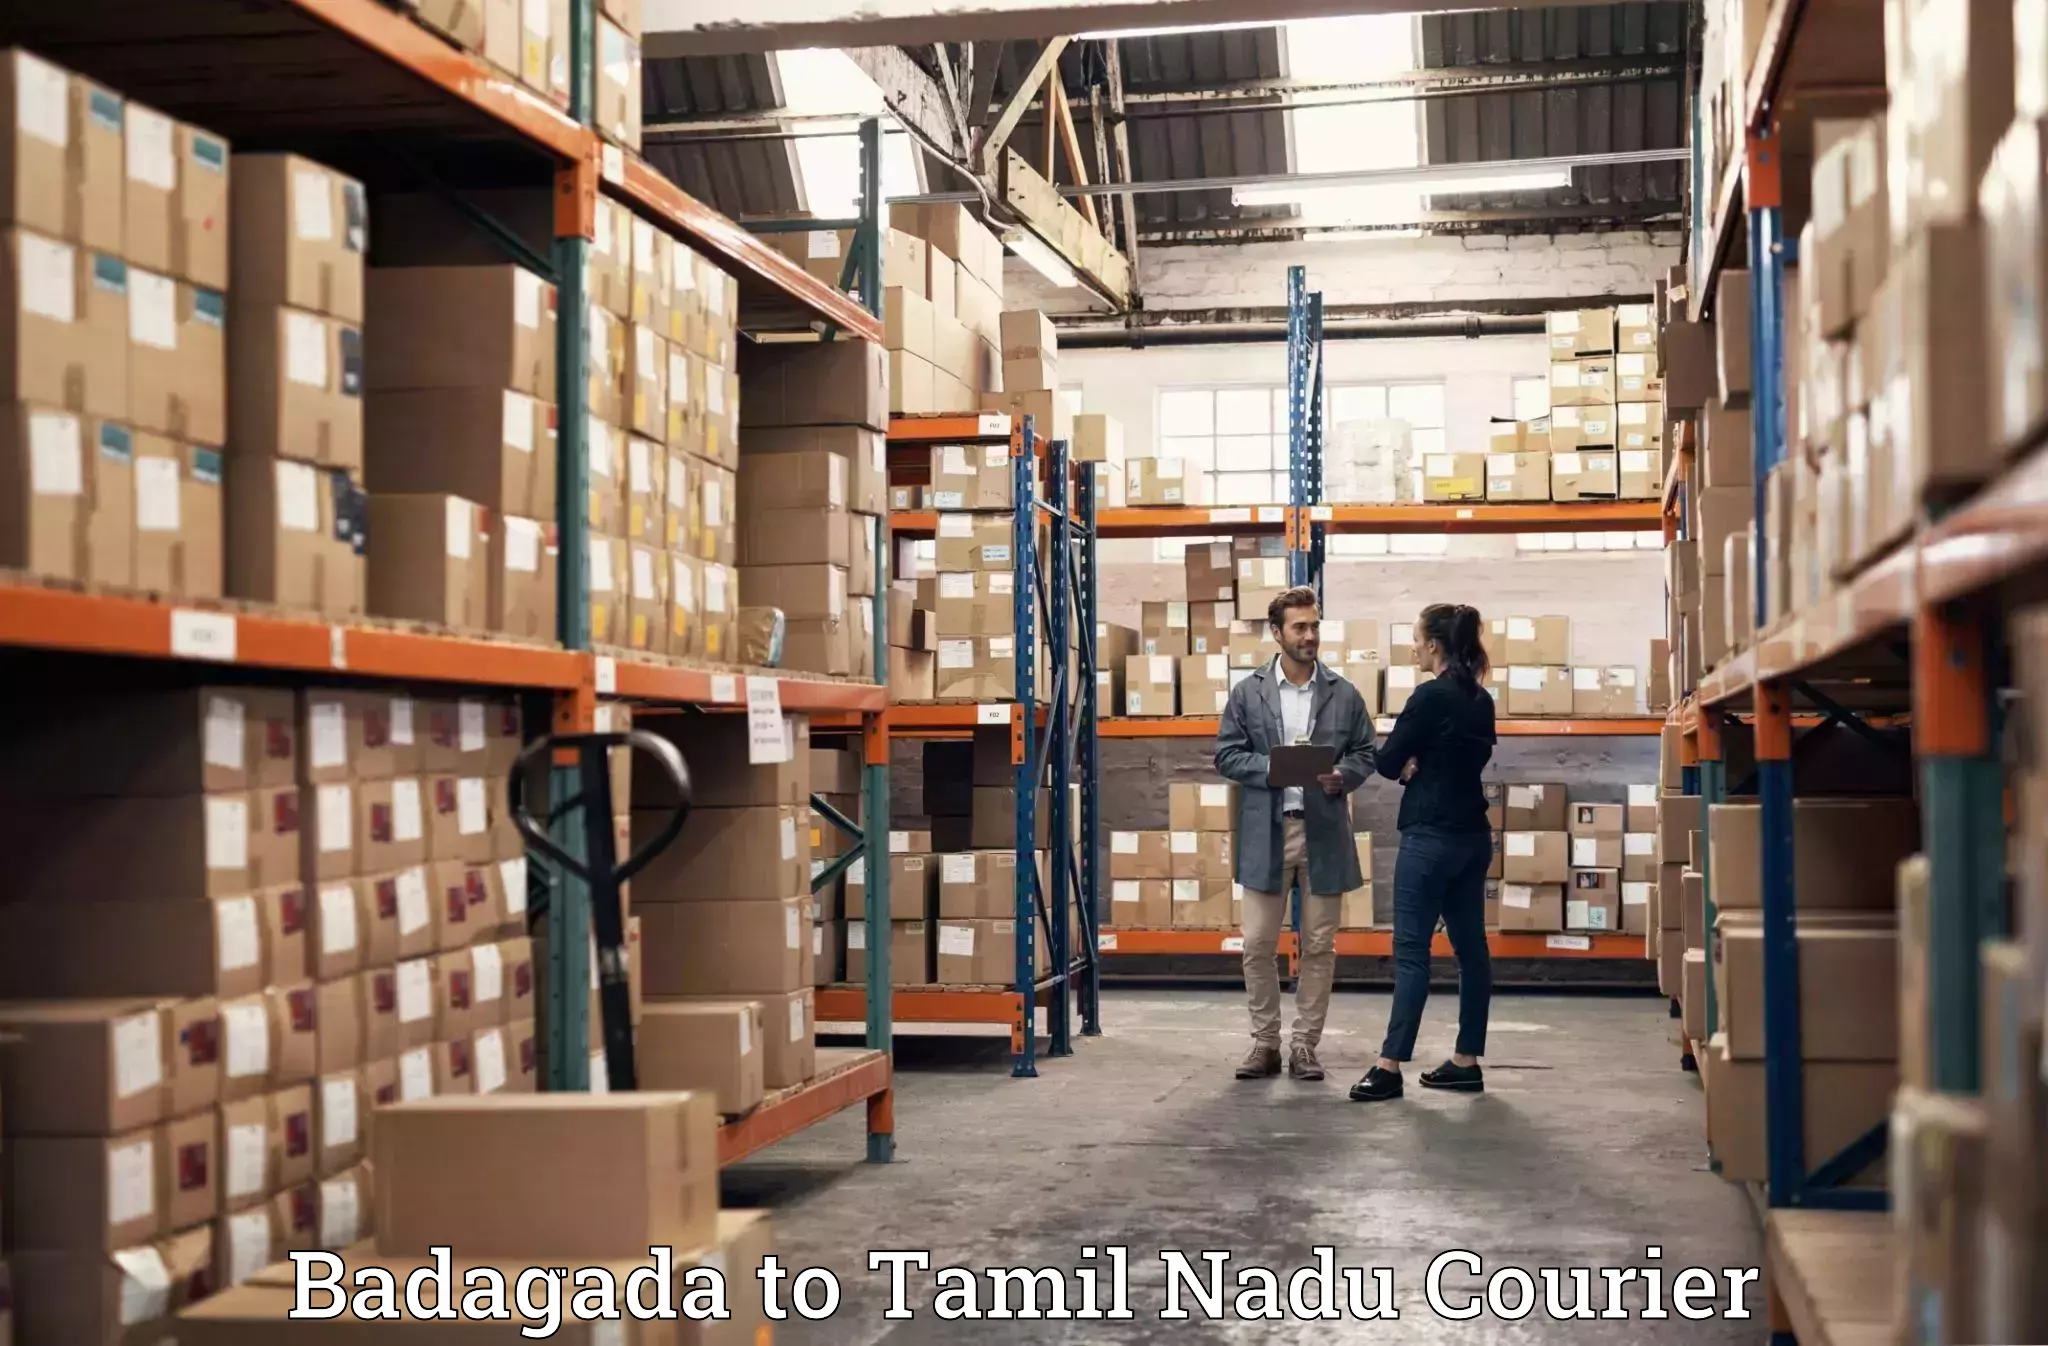 Reliable furniture transport Badagada to Kanchipuram